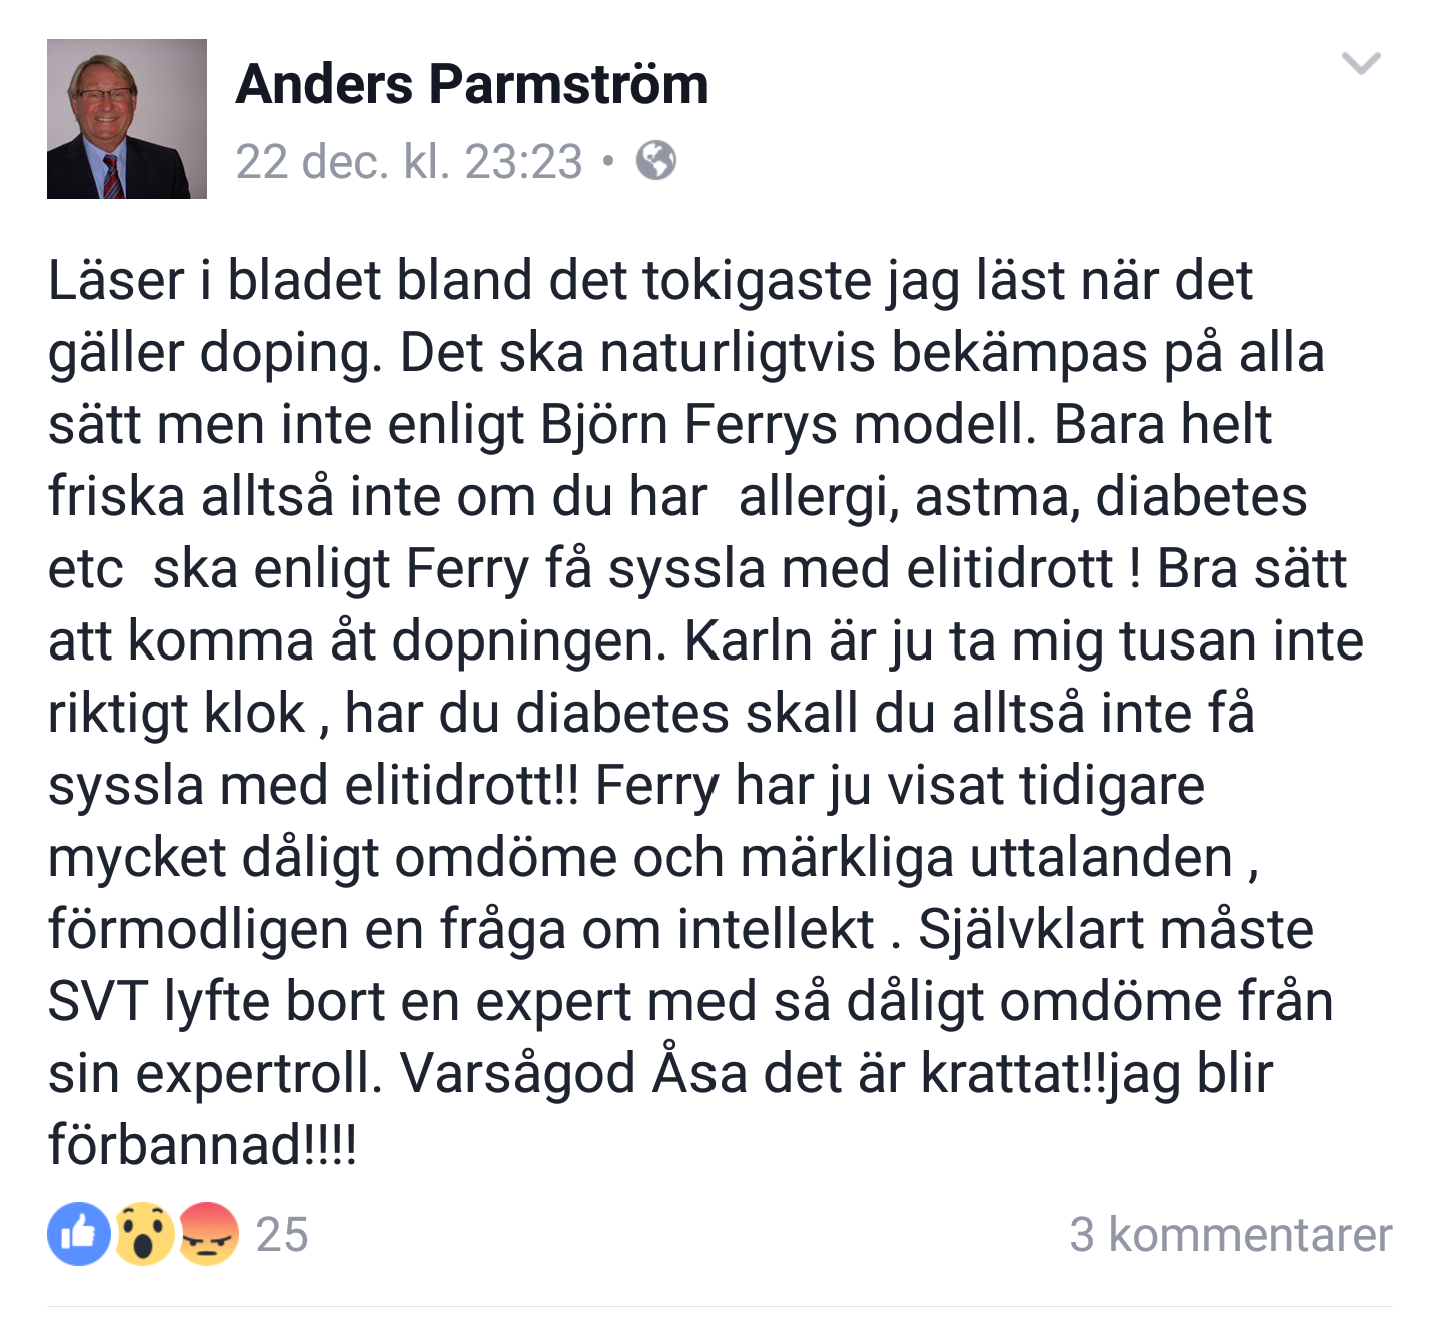 Här uttalar sig Anders Parmström på sin Facebook.